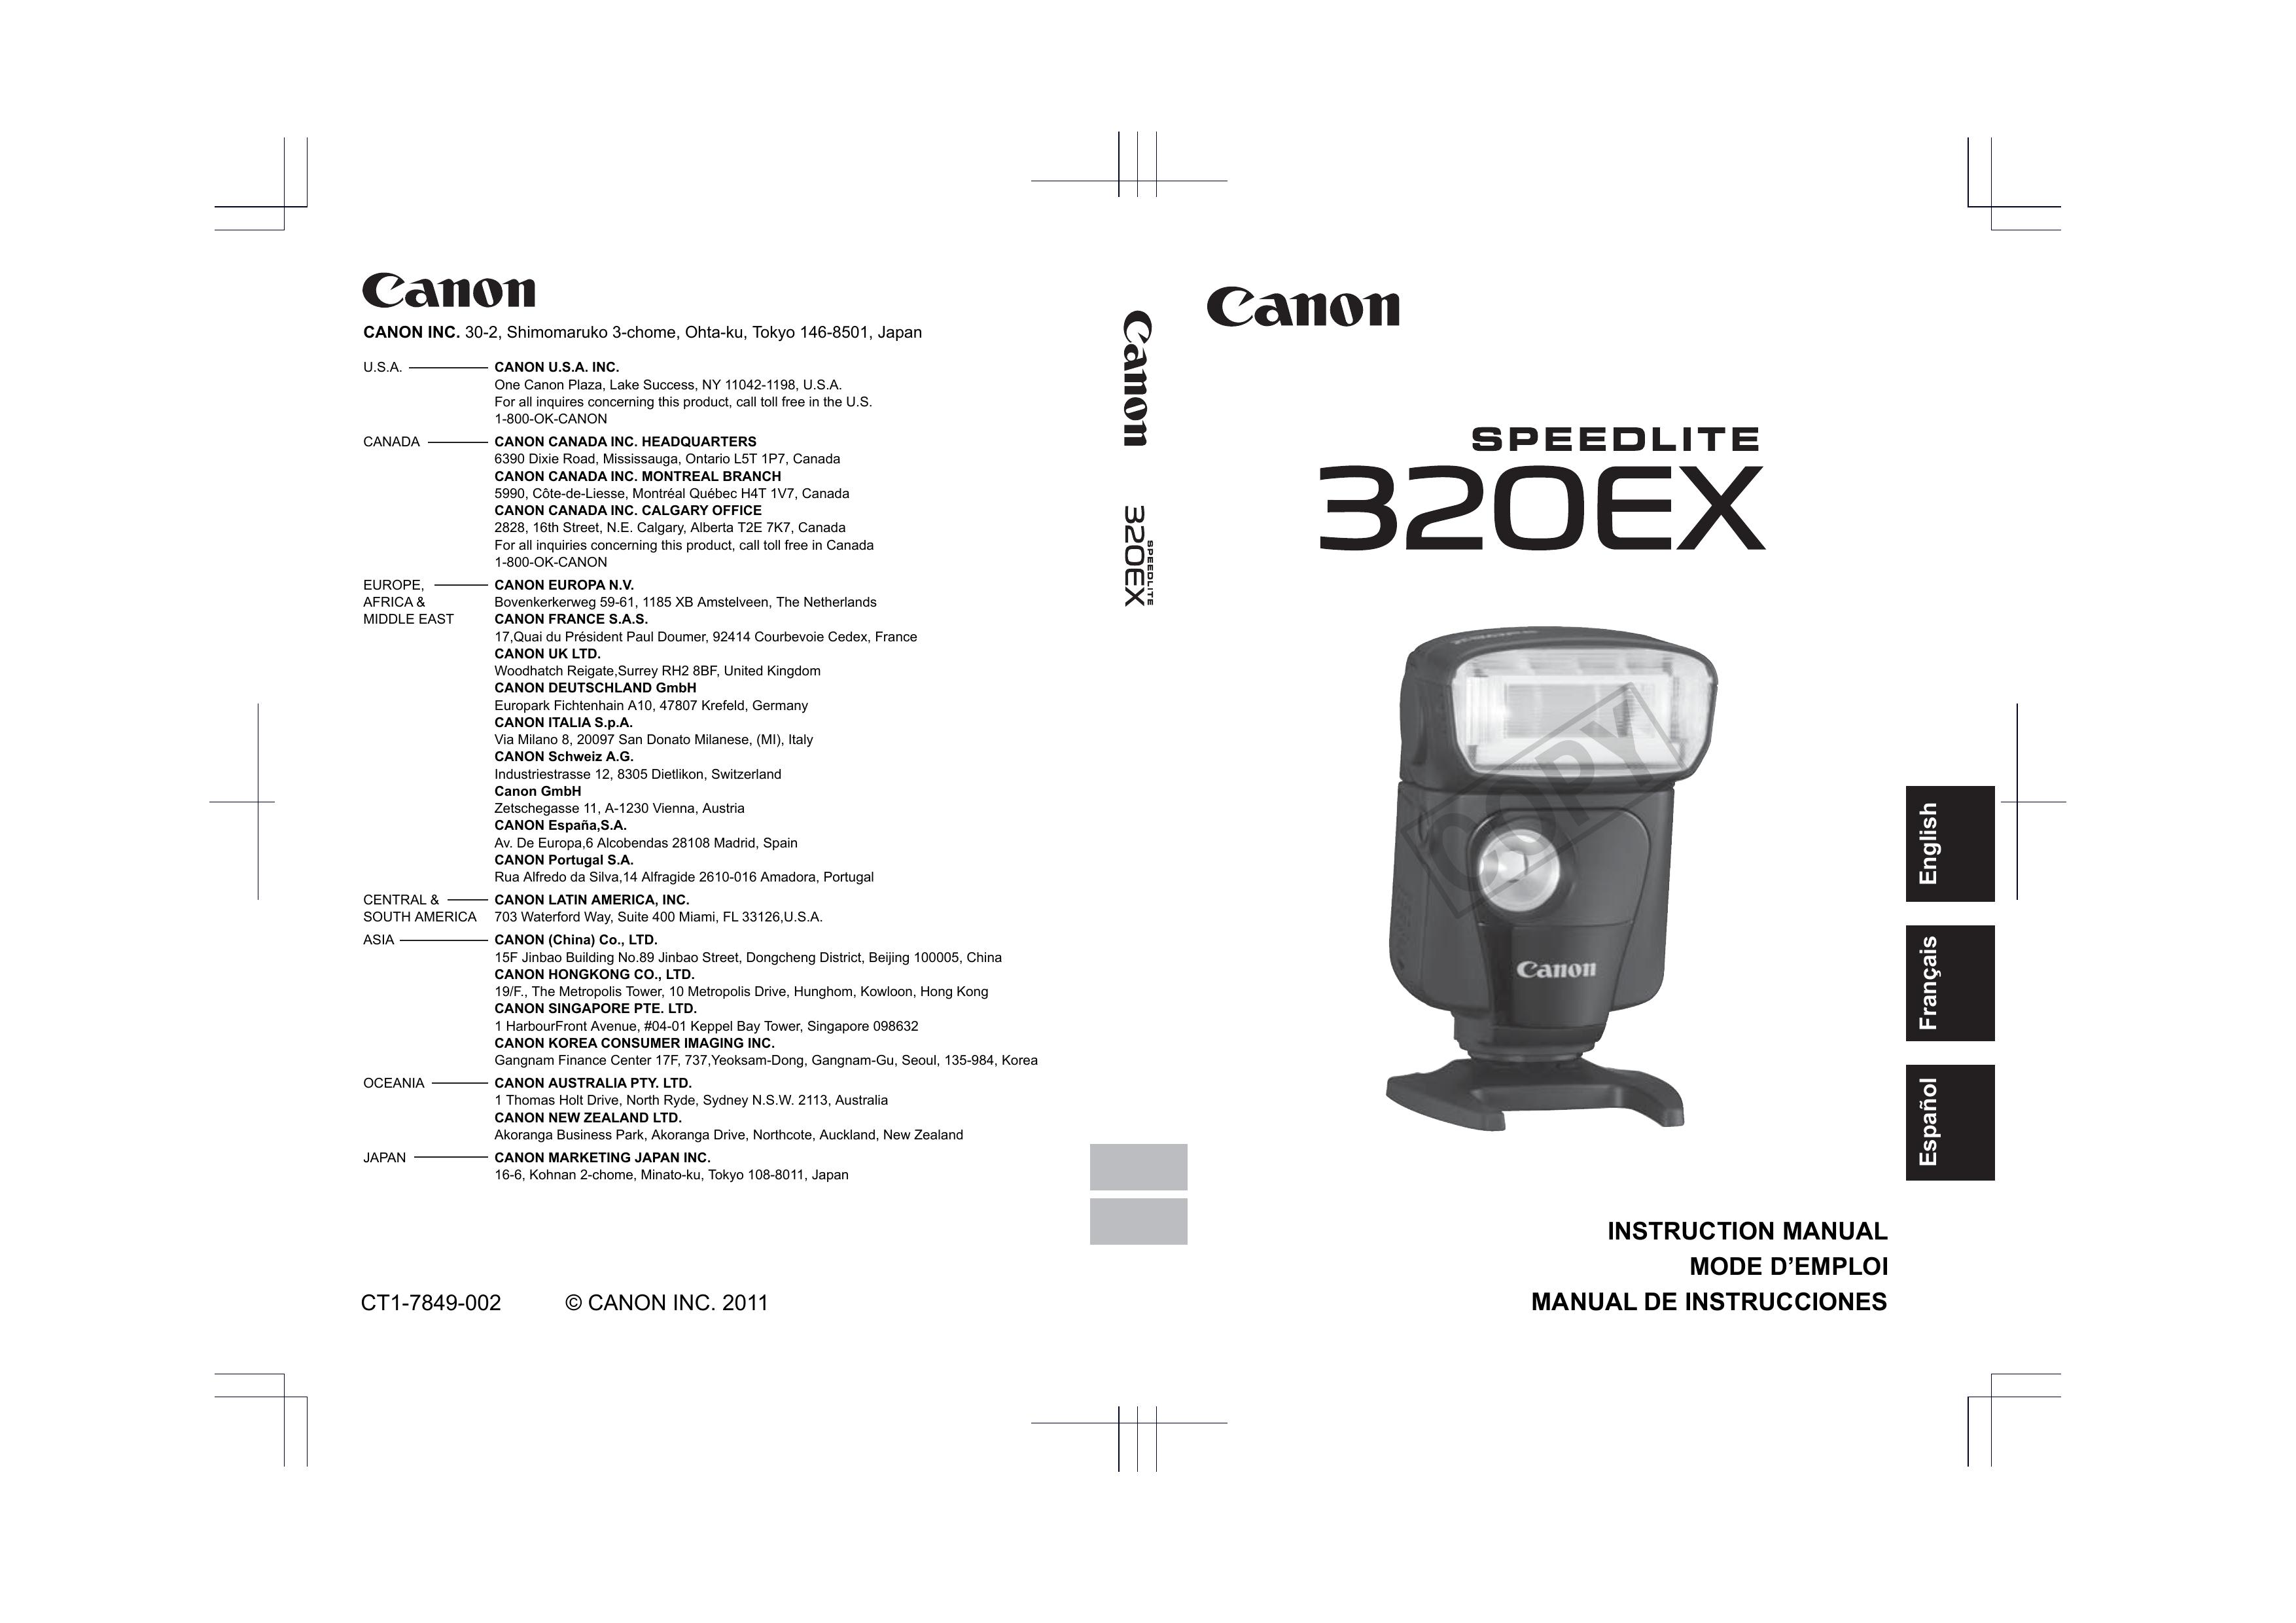 Canon 320EX Camera Flash User Manual